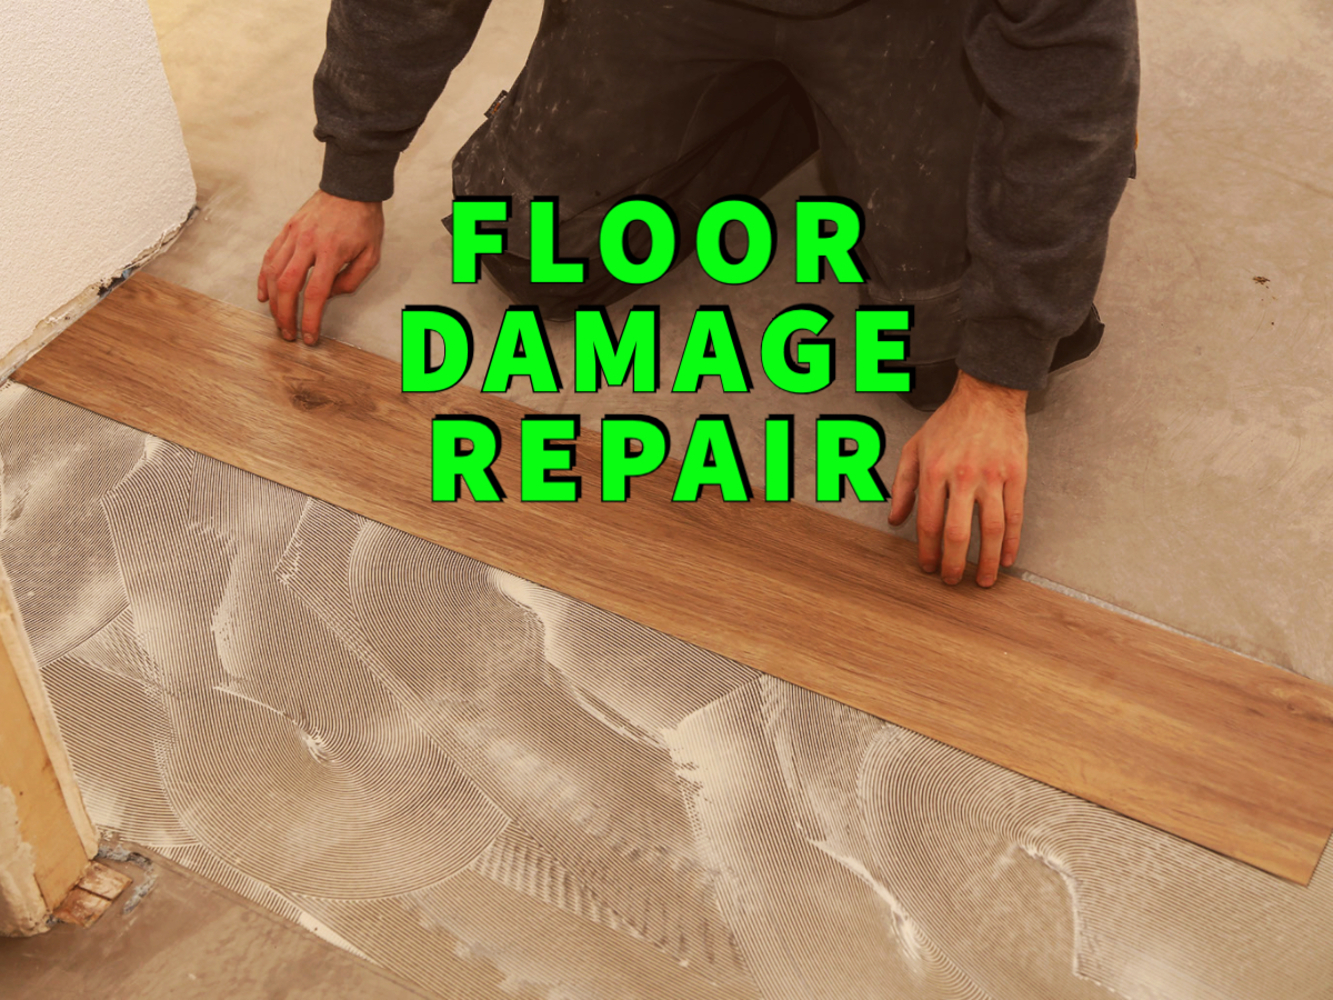 floor damage repair written in green over man installing hardwood floor on concrete